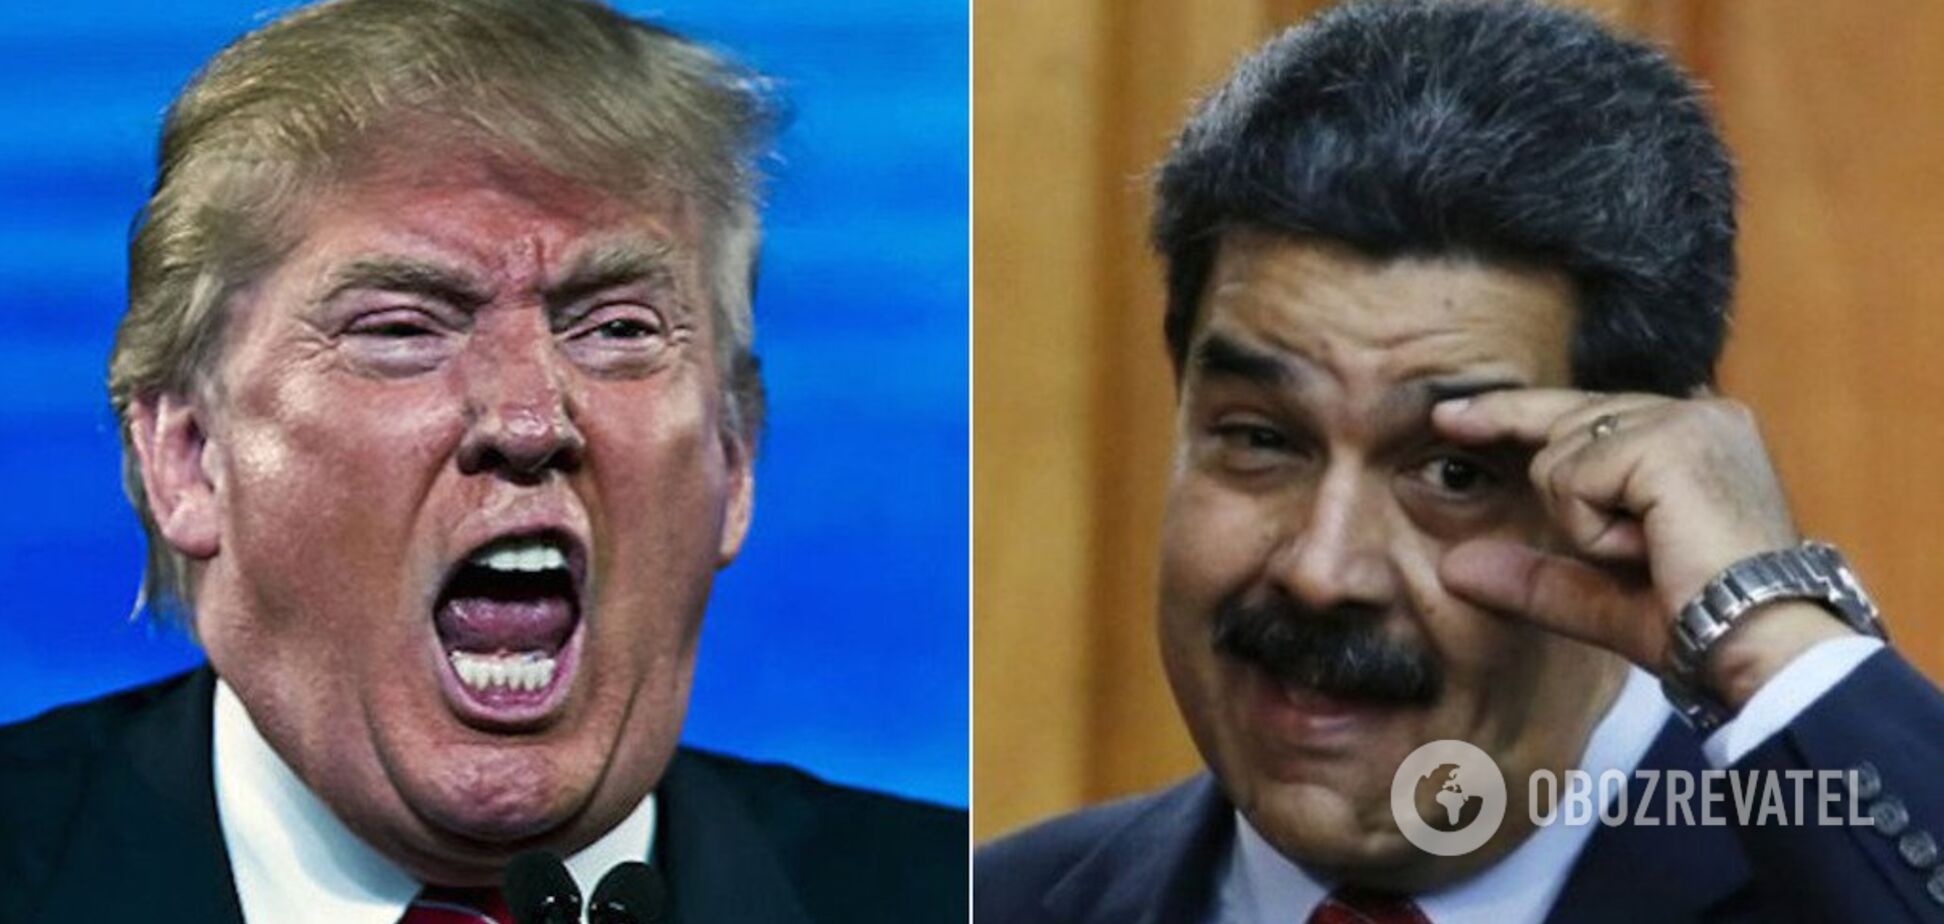 'Раздавлю тирана!' Трамп публично пригрозил уничтожить Мадуро